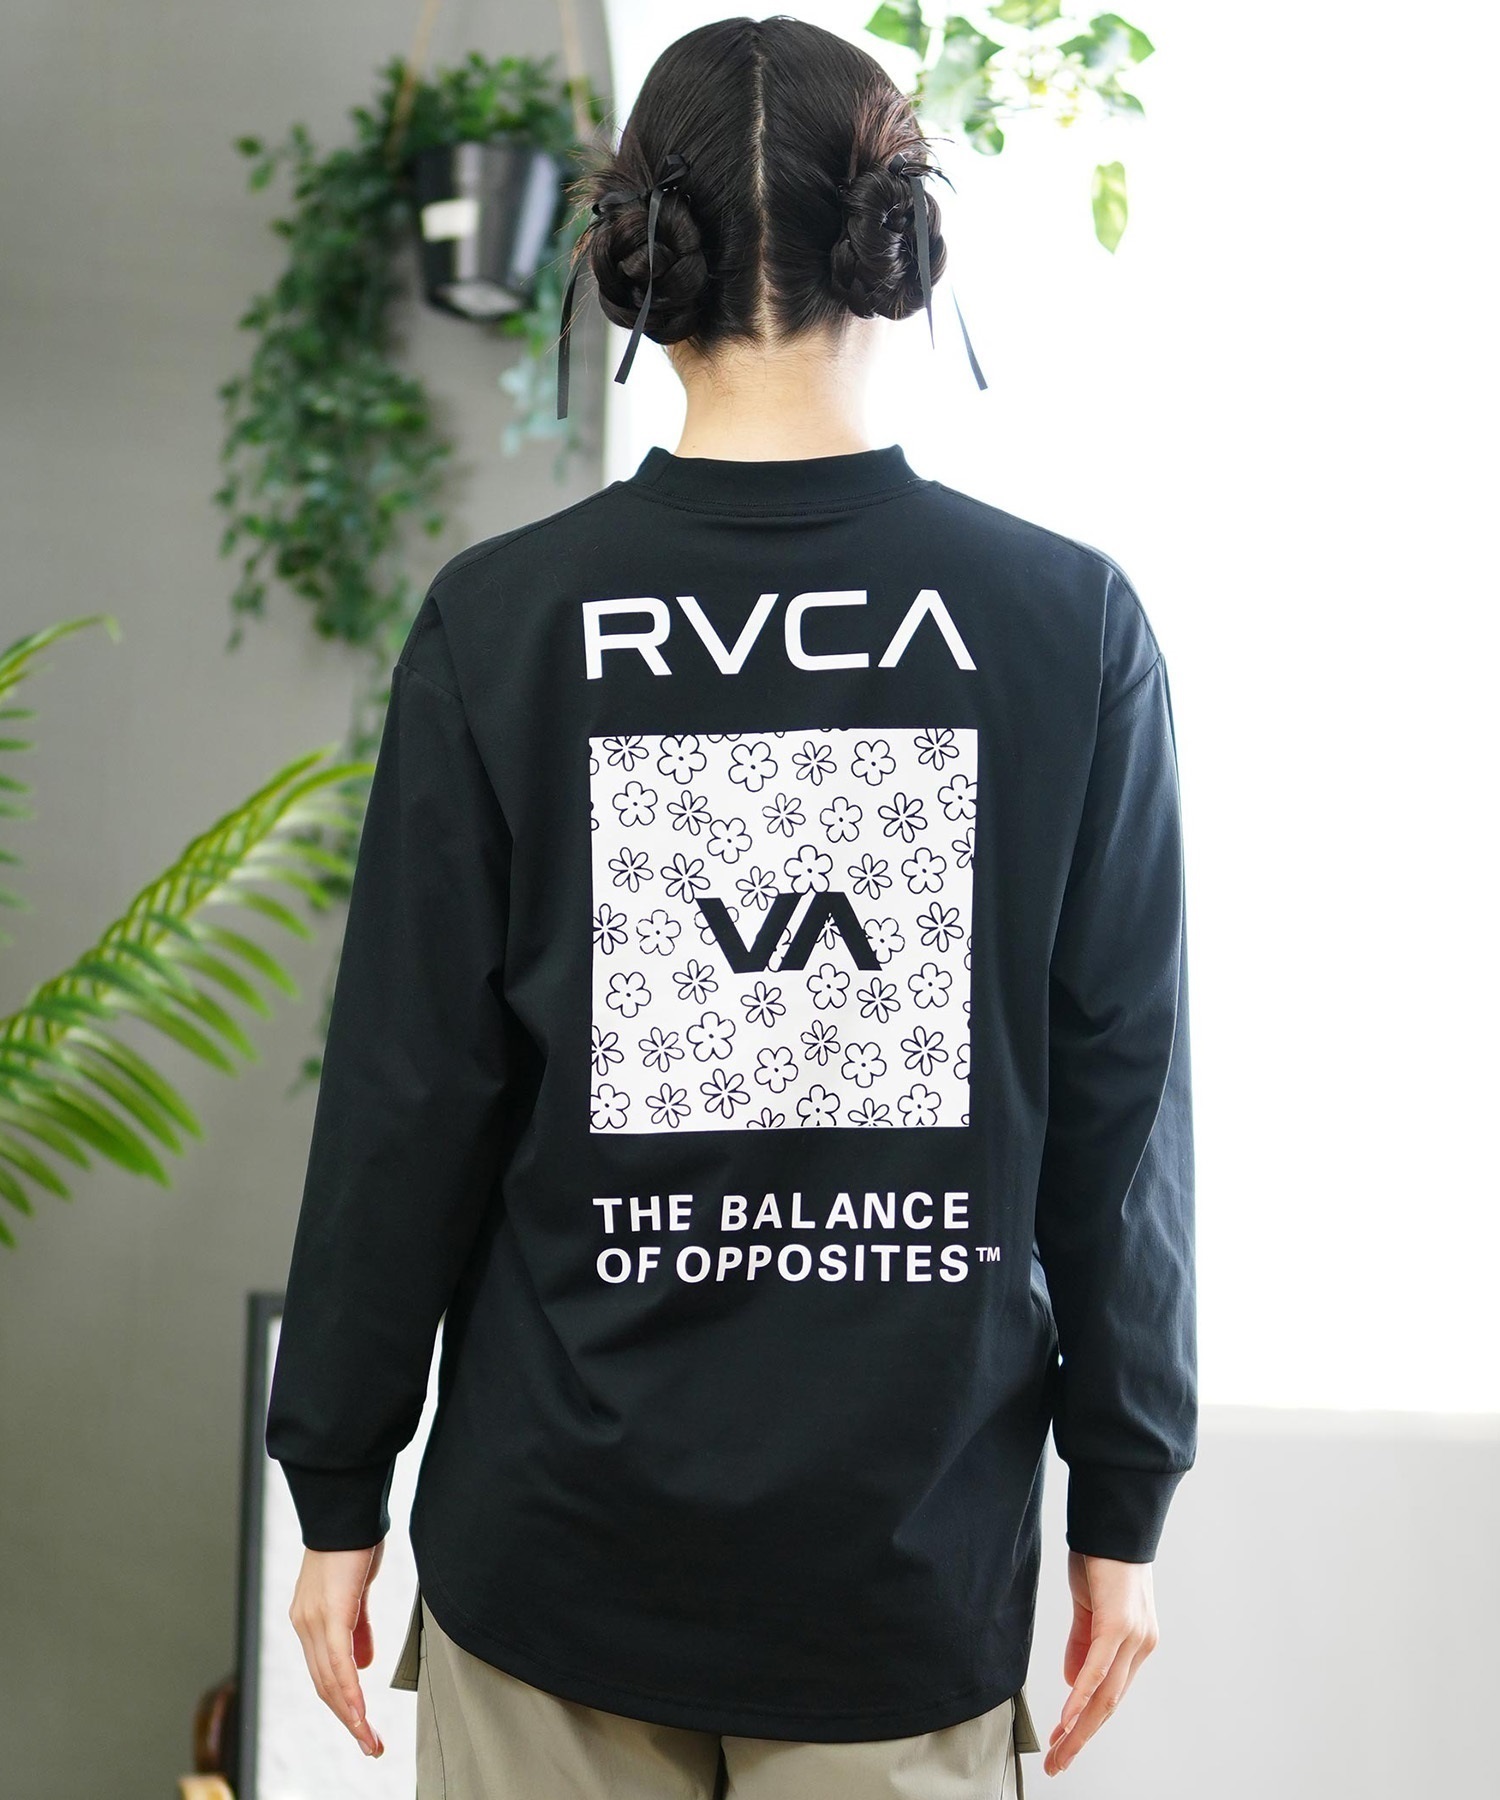 RVCA ルーカ レディース ラッシュガード Tシャツ 長袖 ロンT バックプリント 水陸両用 ユーティリティ UVカット BE04C-P81(WHT-M)